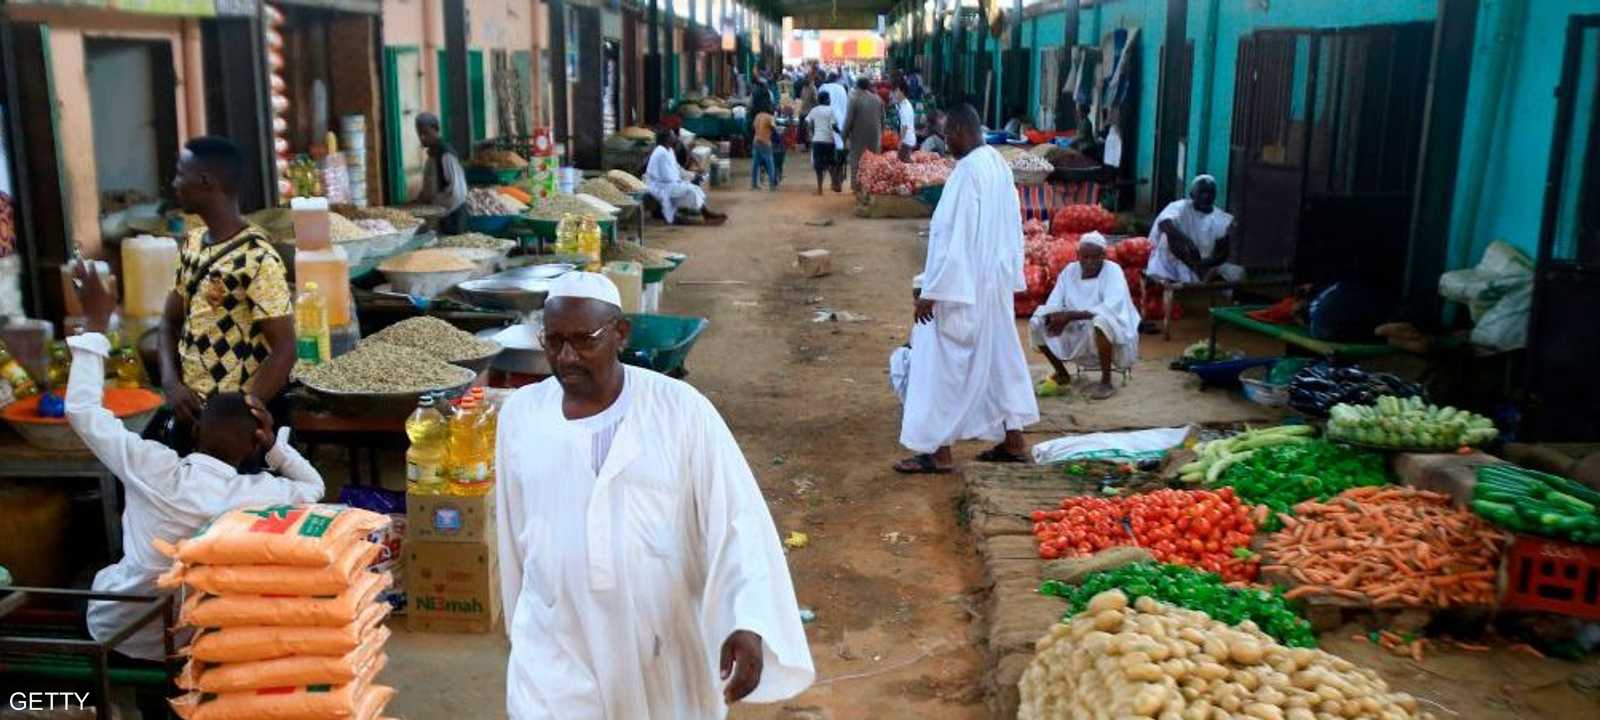 ارتفاع متسارع لأسعار الغذاء في السودان